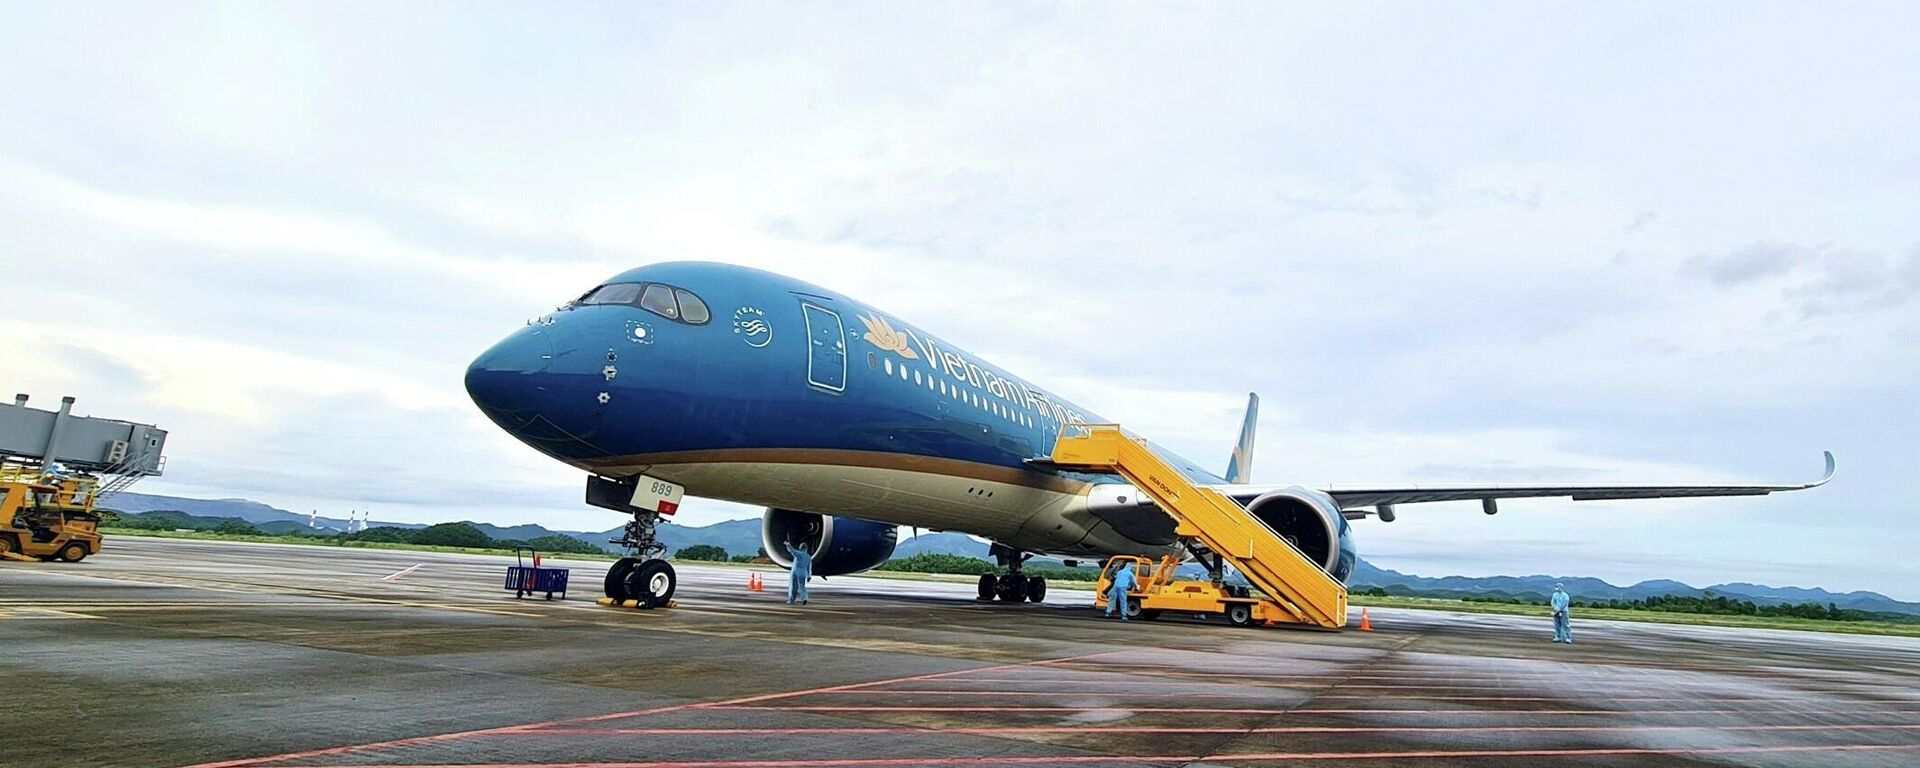 Chuyến bay mang số hiệu VN18 chở 301 hành khách từ Pháp hạ cánh an toàn ngày 23/9 tại sân bay quốc tế Vân Đồn. - Sputnik Việt Nam, 1920, 08.10.2021